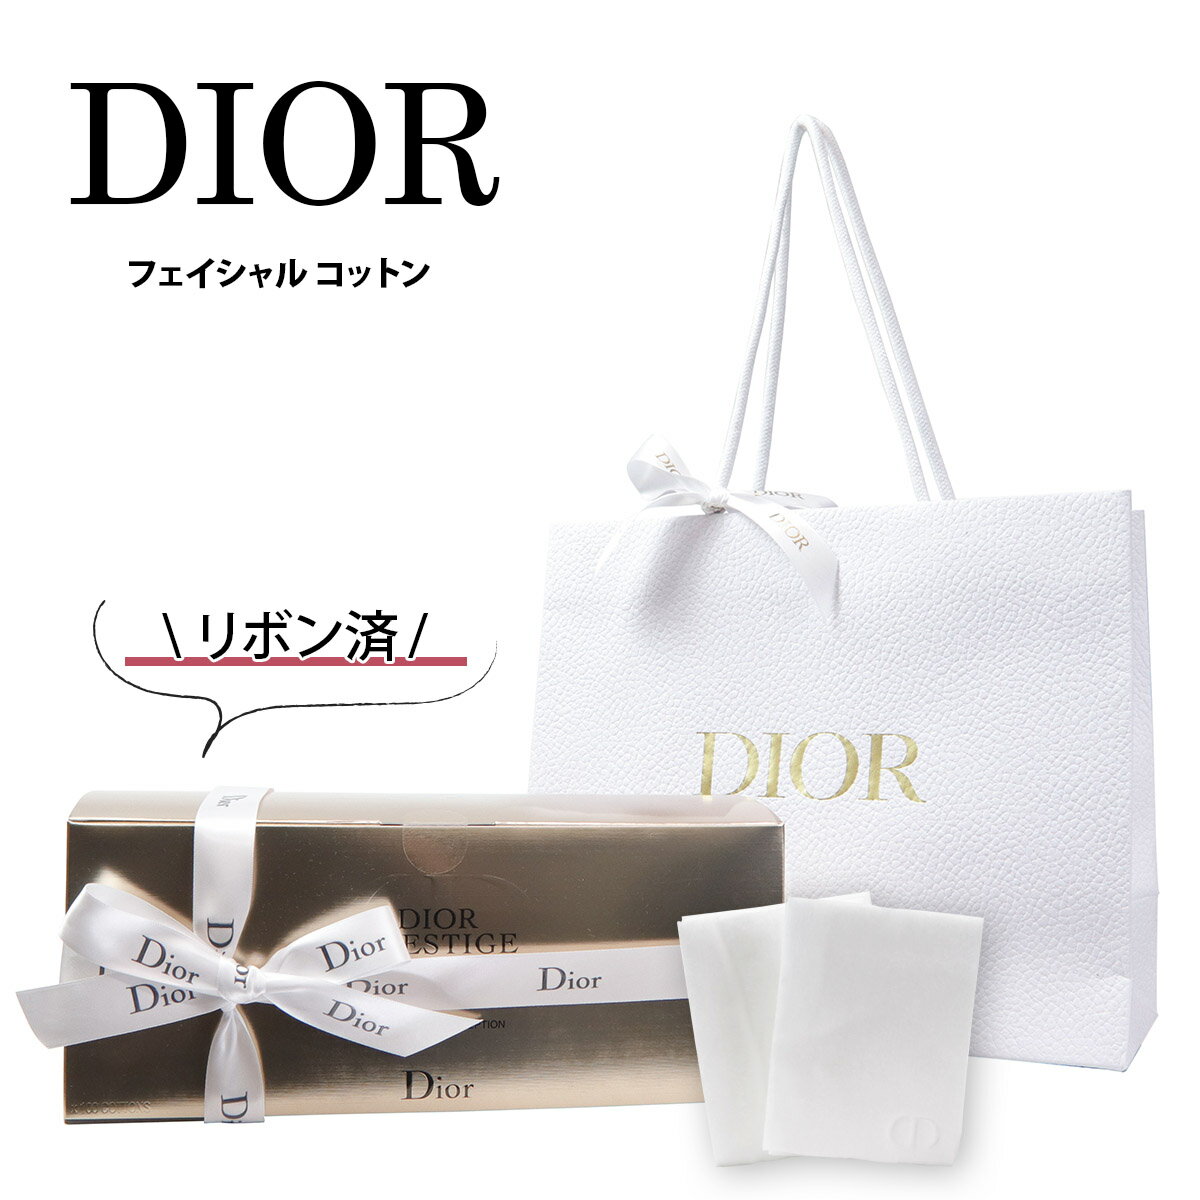 【正規紙袋 無料】 ディオール コットン 100枚入り Dior クリスチャンディオール Christian 化粧品 Dior オーガニッ…